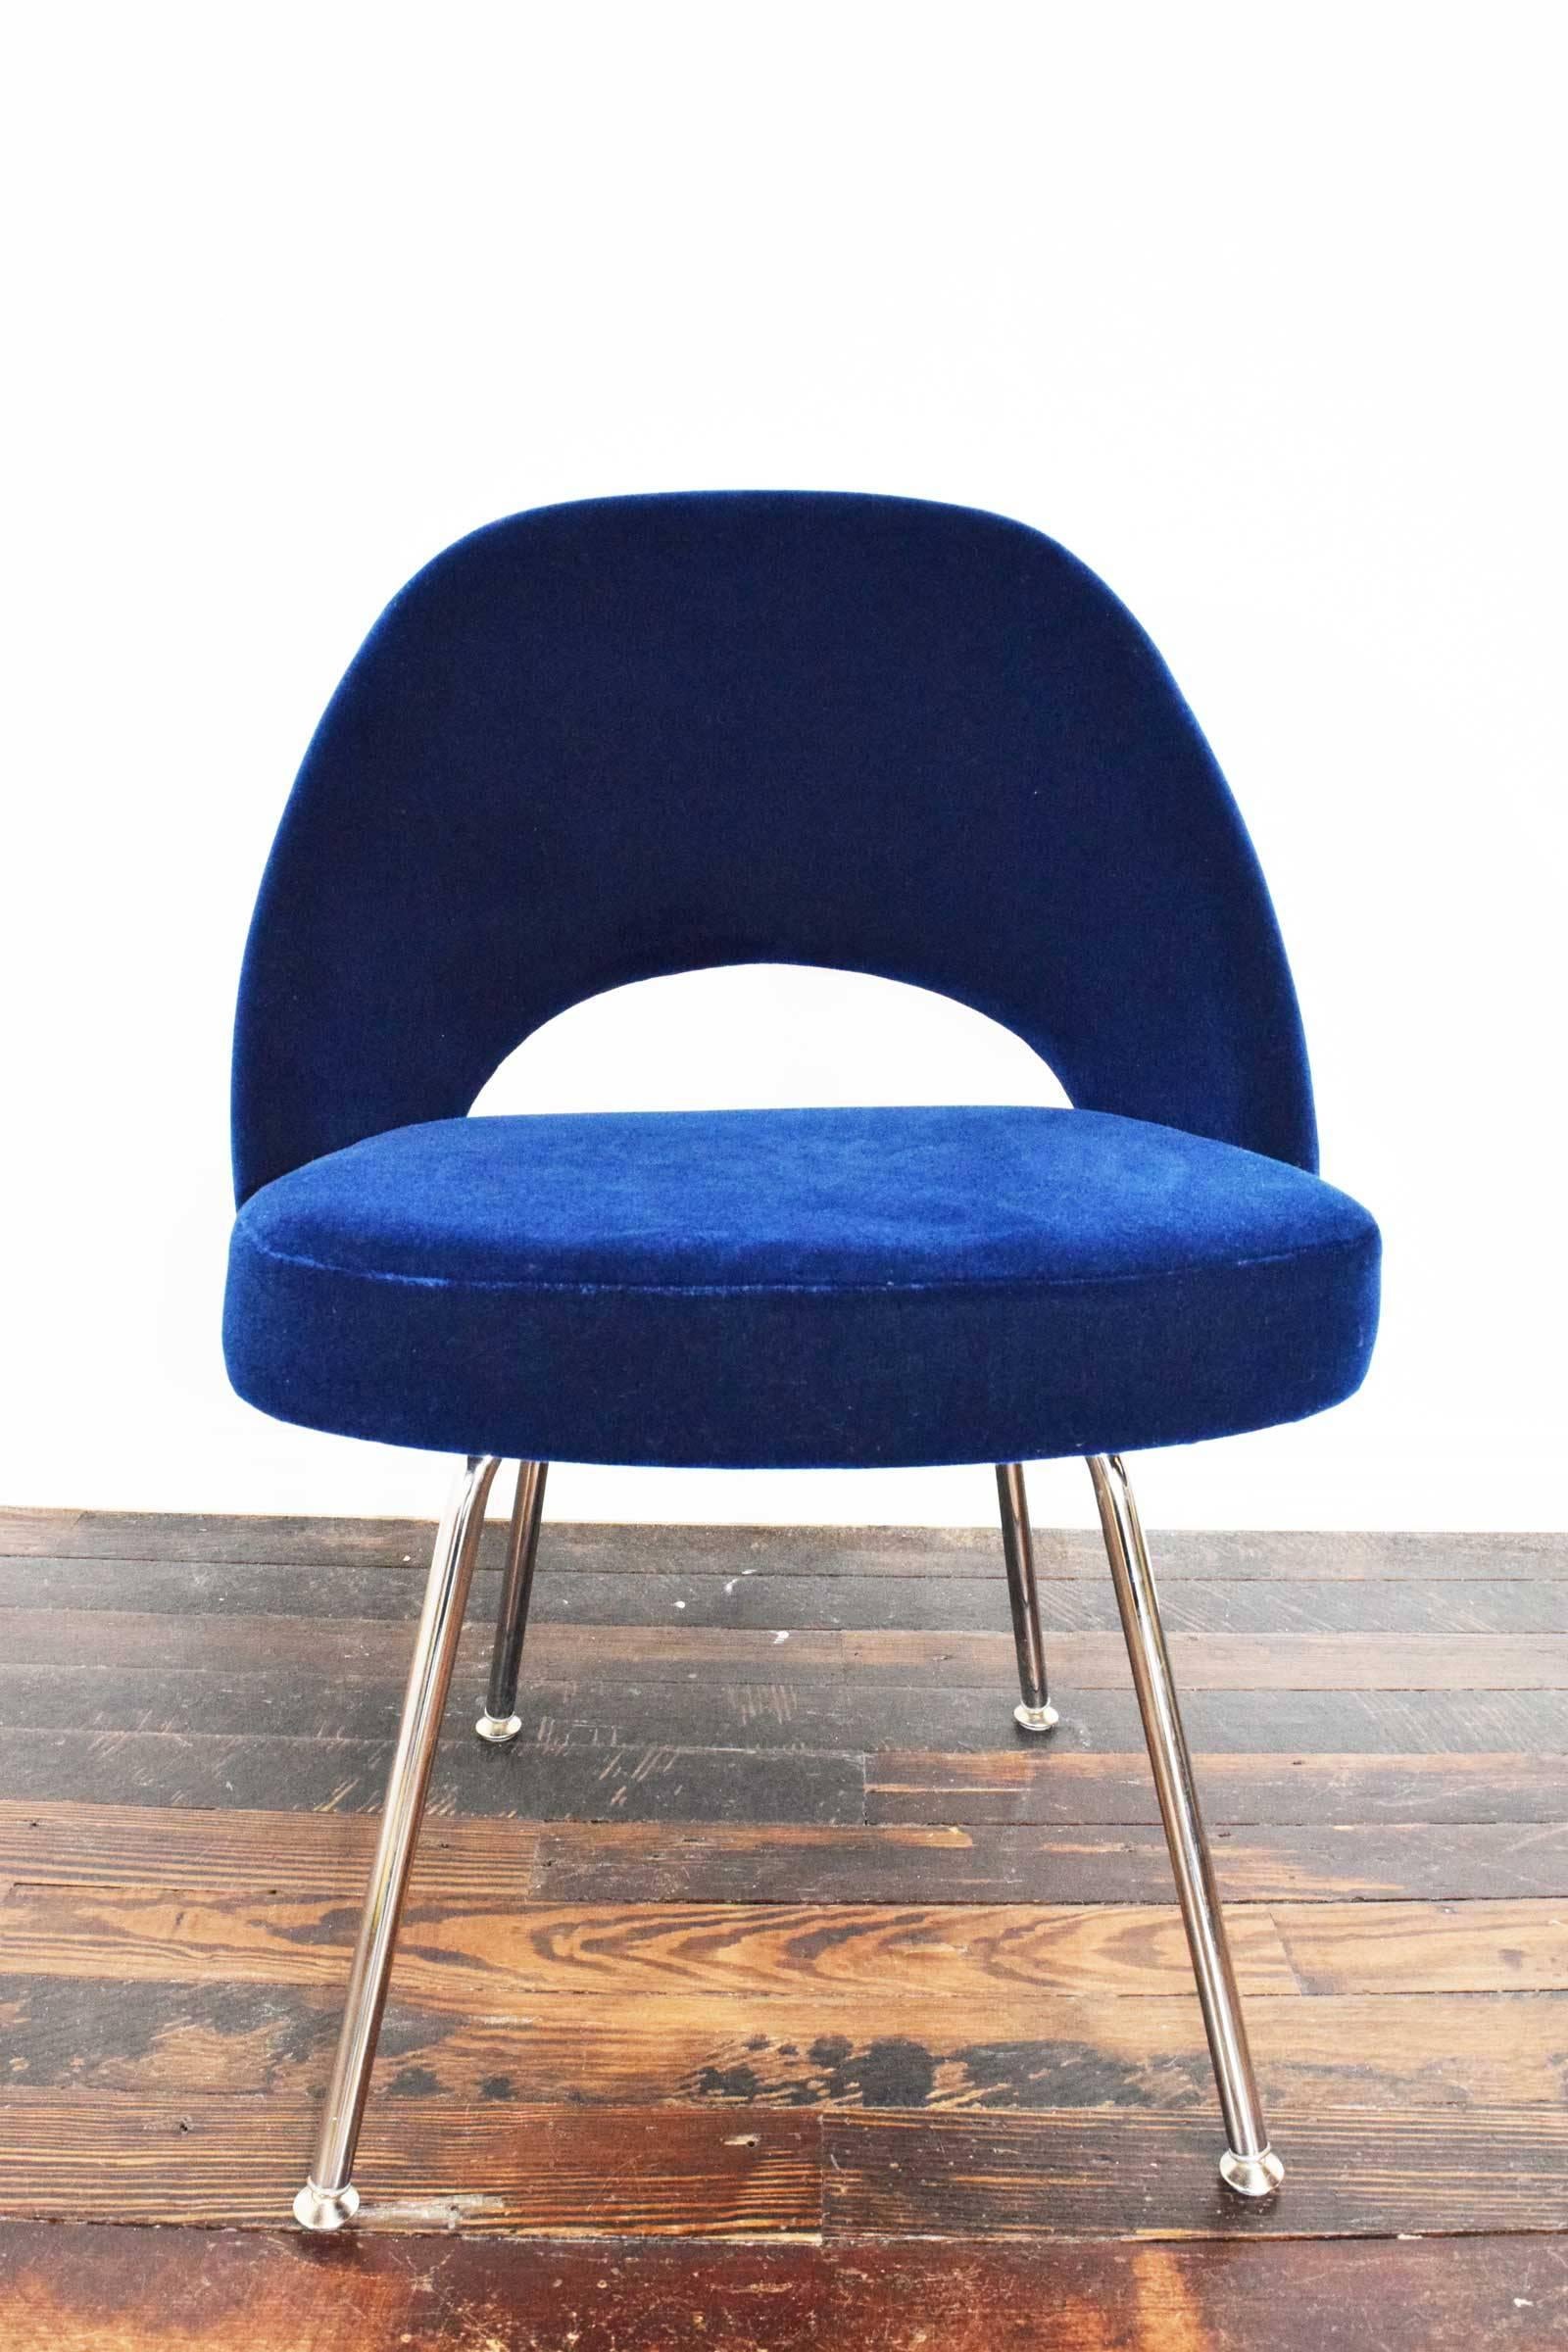 American Knoll Eero Saarinen Armless Executive Chair  - 5 Available in Mohair